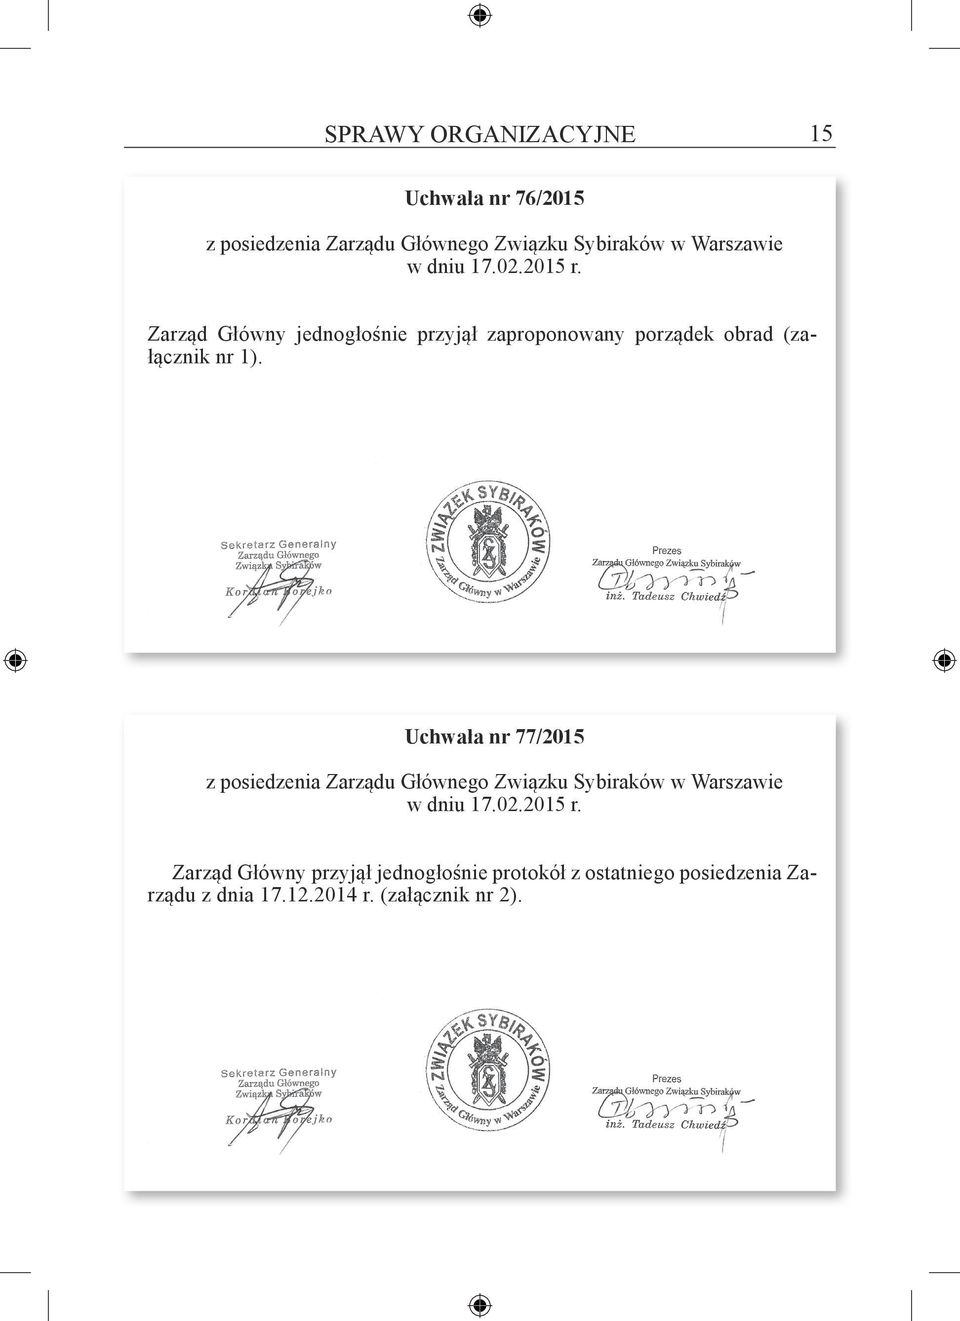 Uchwała nr 77/2015 z posiedzenia Zarządu Głównego Związku Sybiraków w Warszawie w dniu 17.02.2015 r.